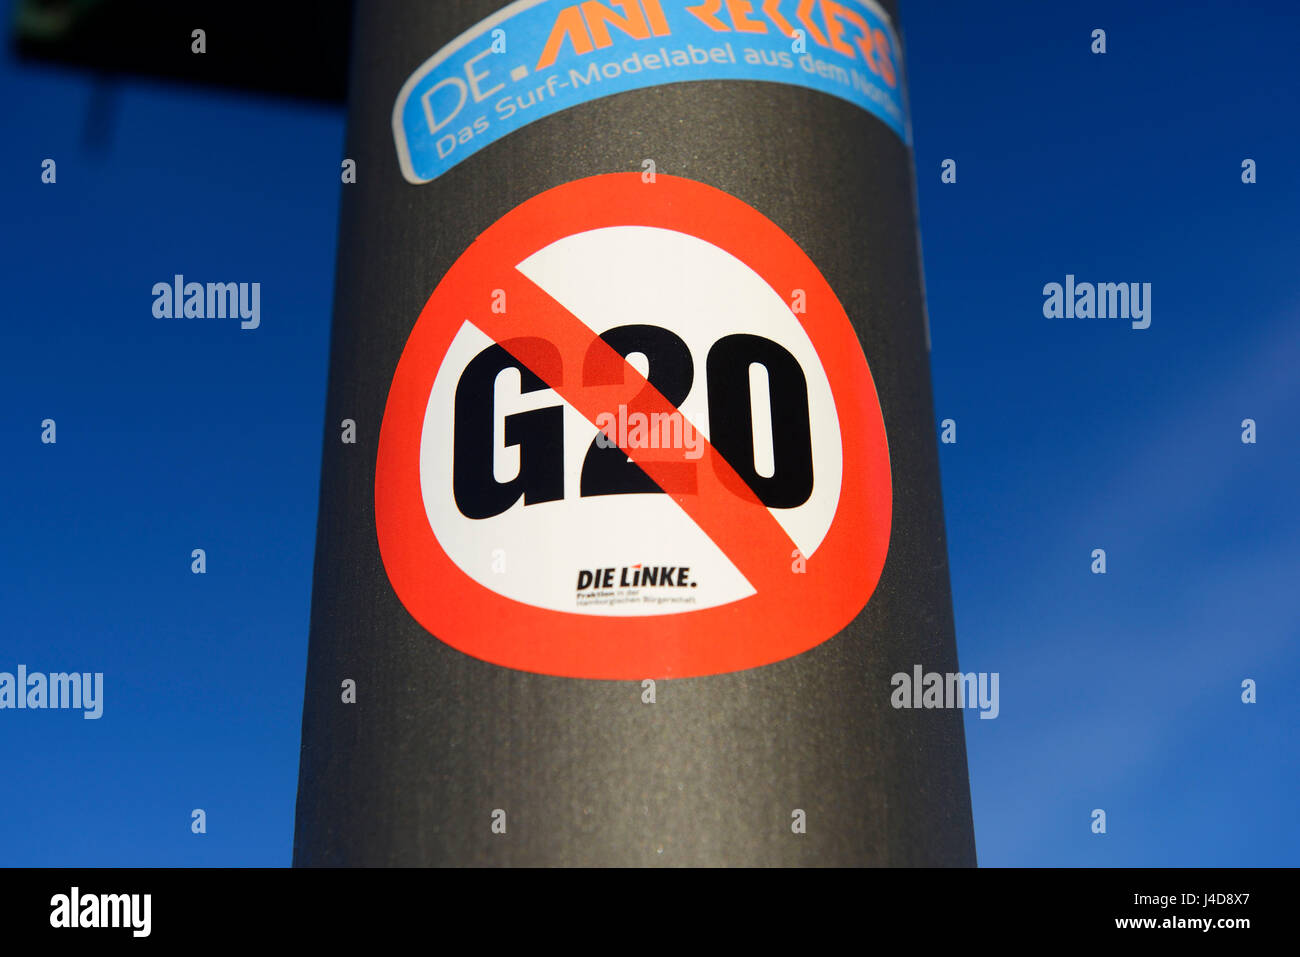 Autocollant de protestation contre la réunion du G20 à Hambourg, Allemagne, Europe, Protestaufkleber gegen das Treffen der G20 à Hamburg, Deutschland, Europa Banque D'Images